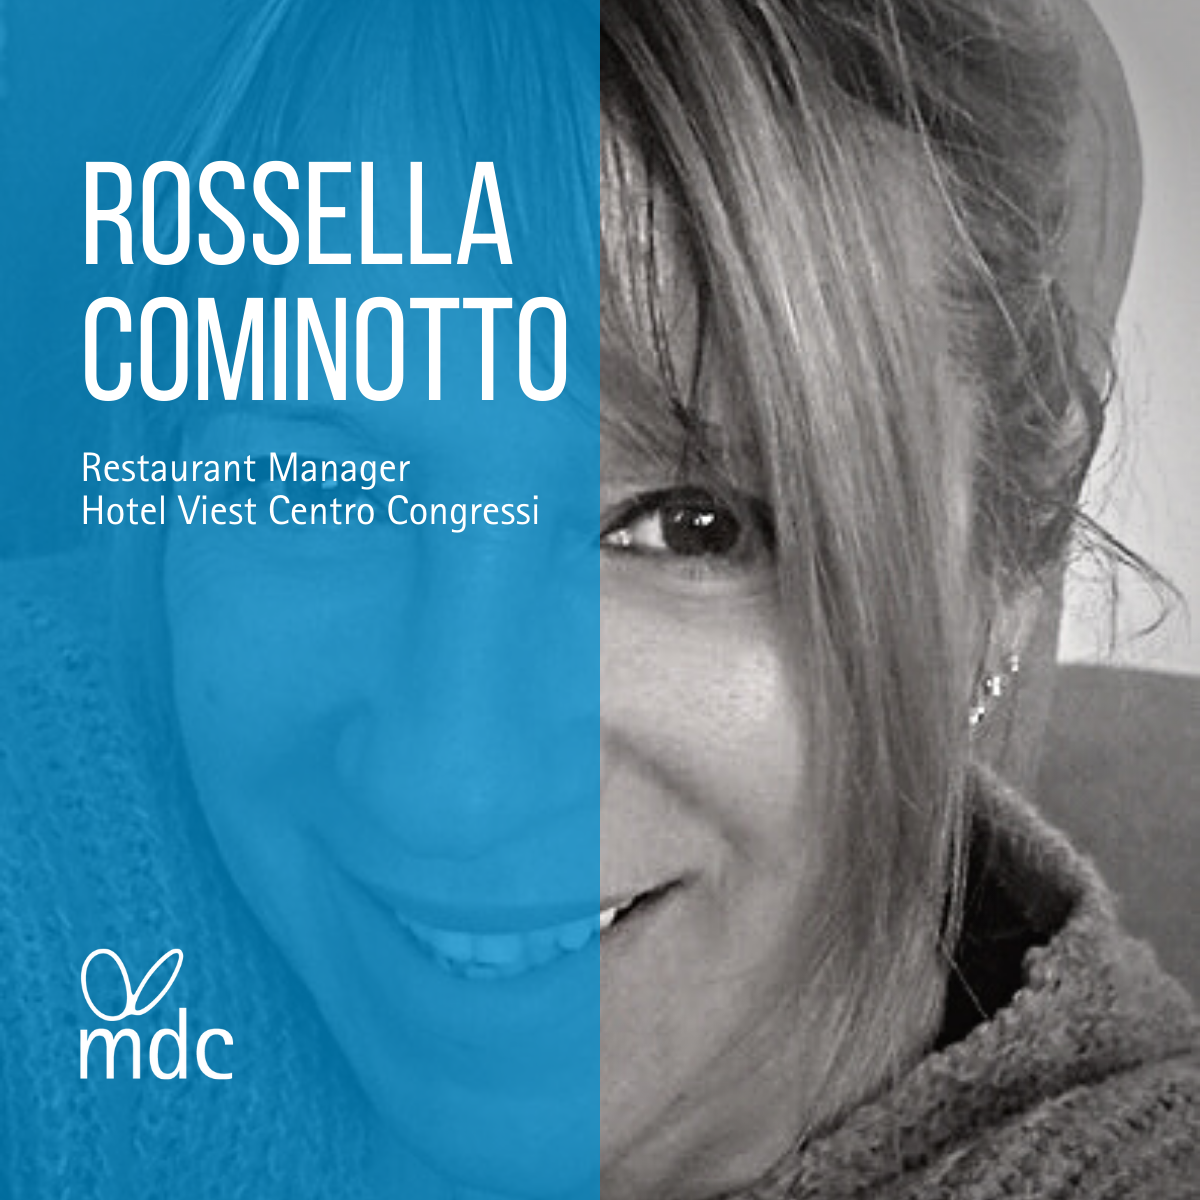 Rossella Cominotto